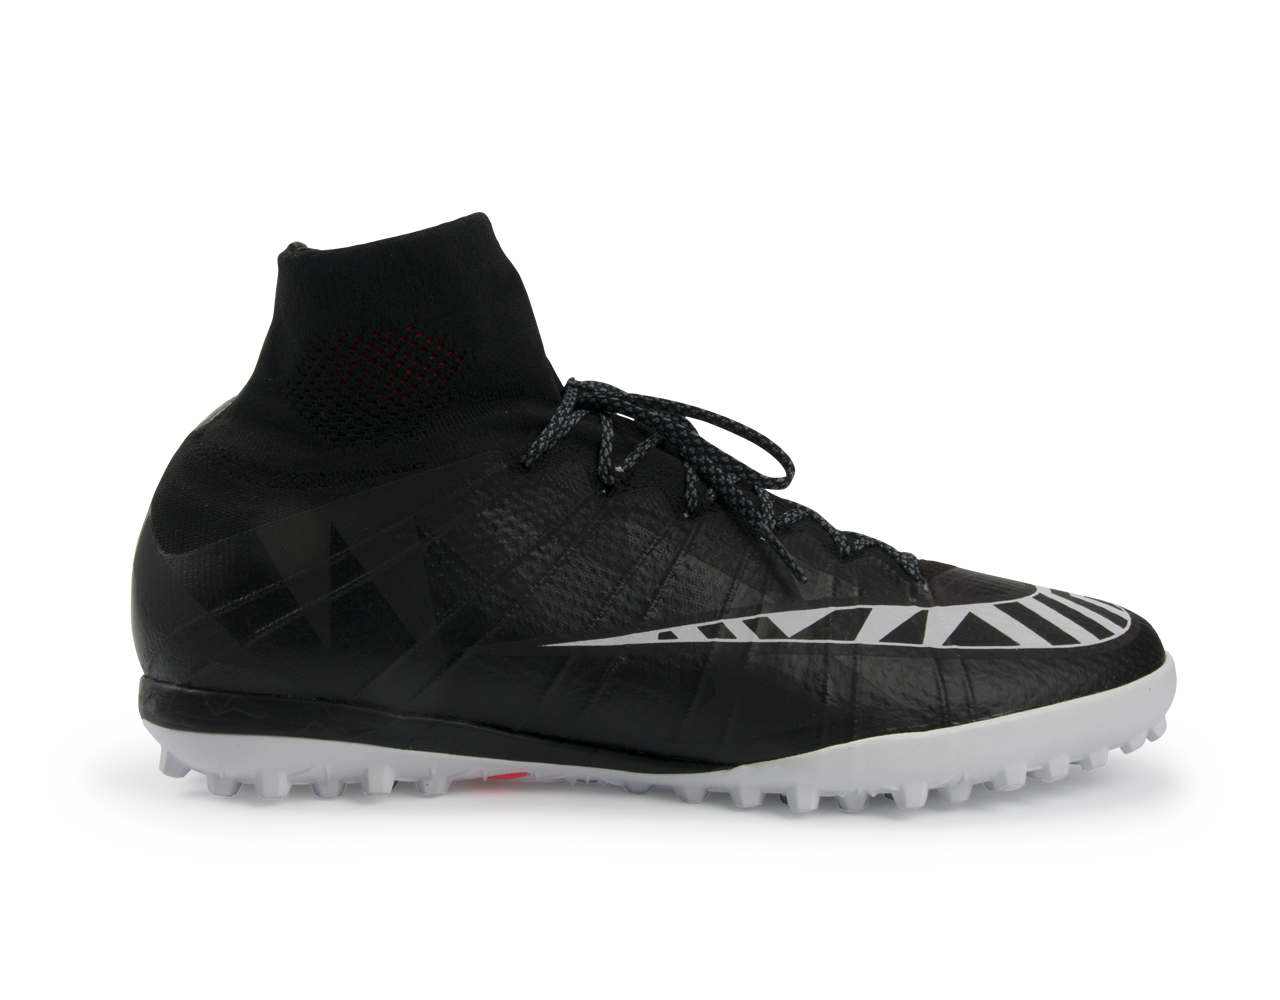 Nike Men's MercurialX Proximo Street Turf Soccer Shoes Black/White/Hot Lava